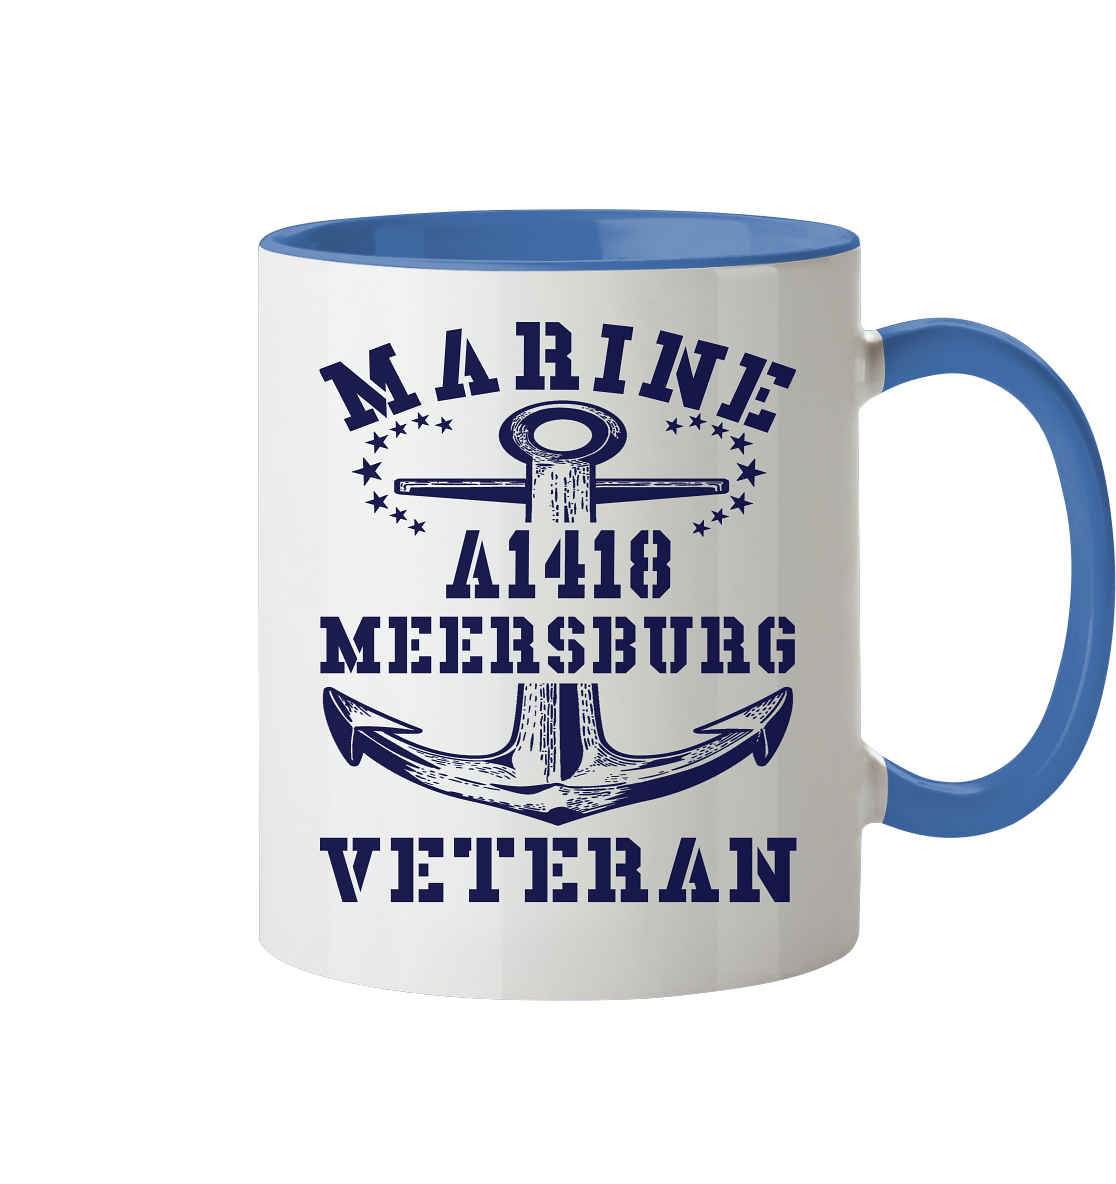 Troßschiff A1418 MEERSBURG Marine Veteran - Tasse zweifarbig